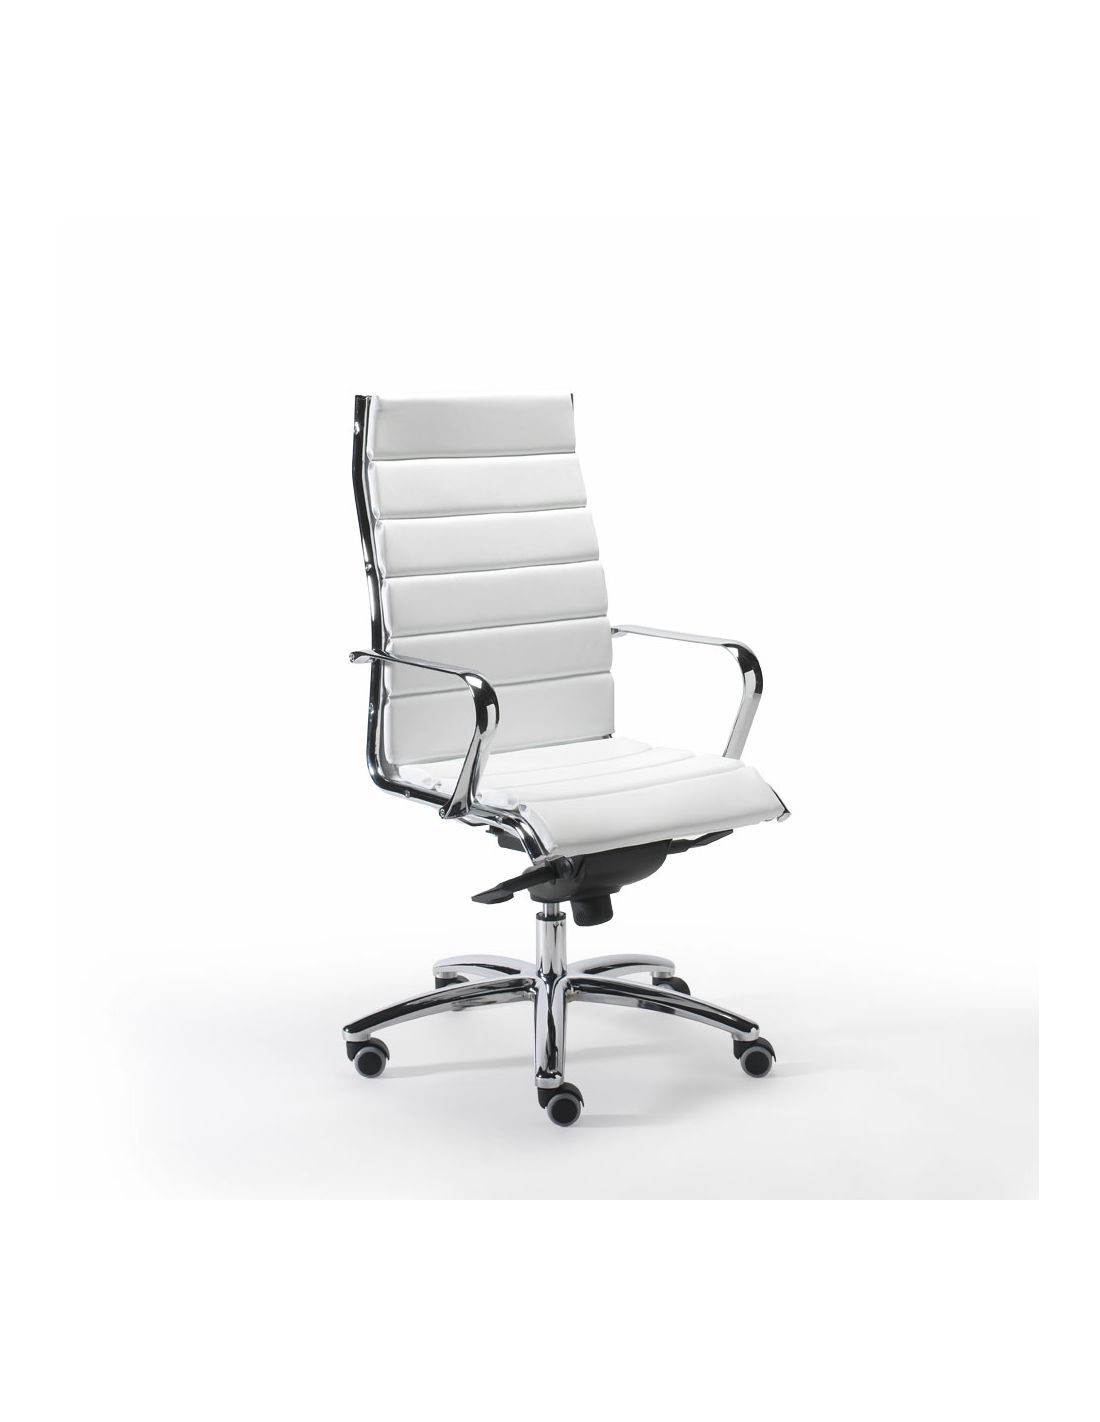 Sedia presidenziale per ufficio moderno design matrix for Design sedia ufficio